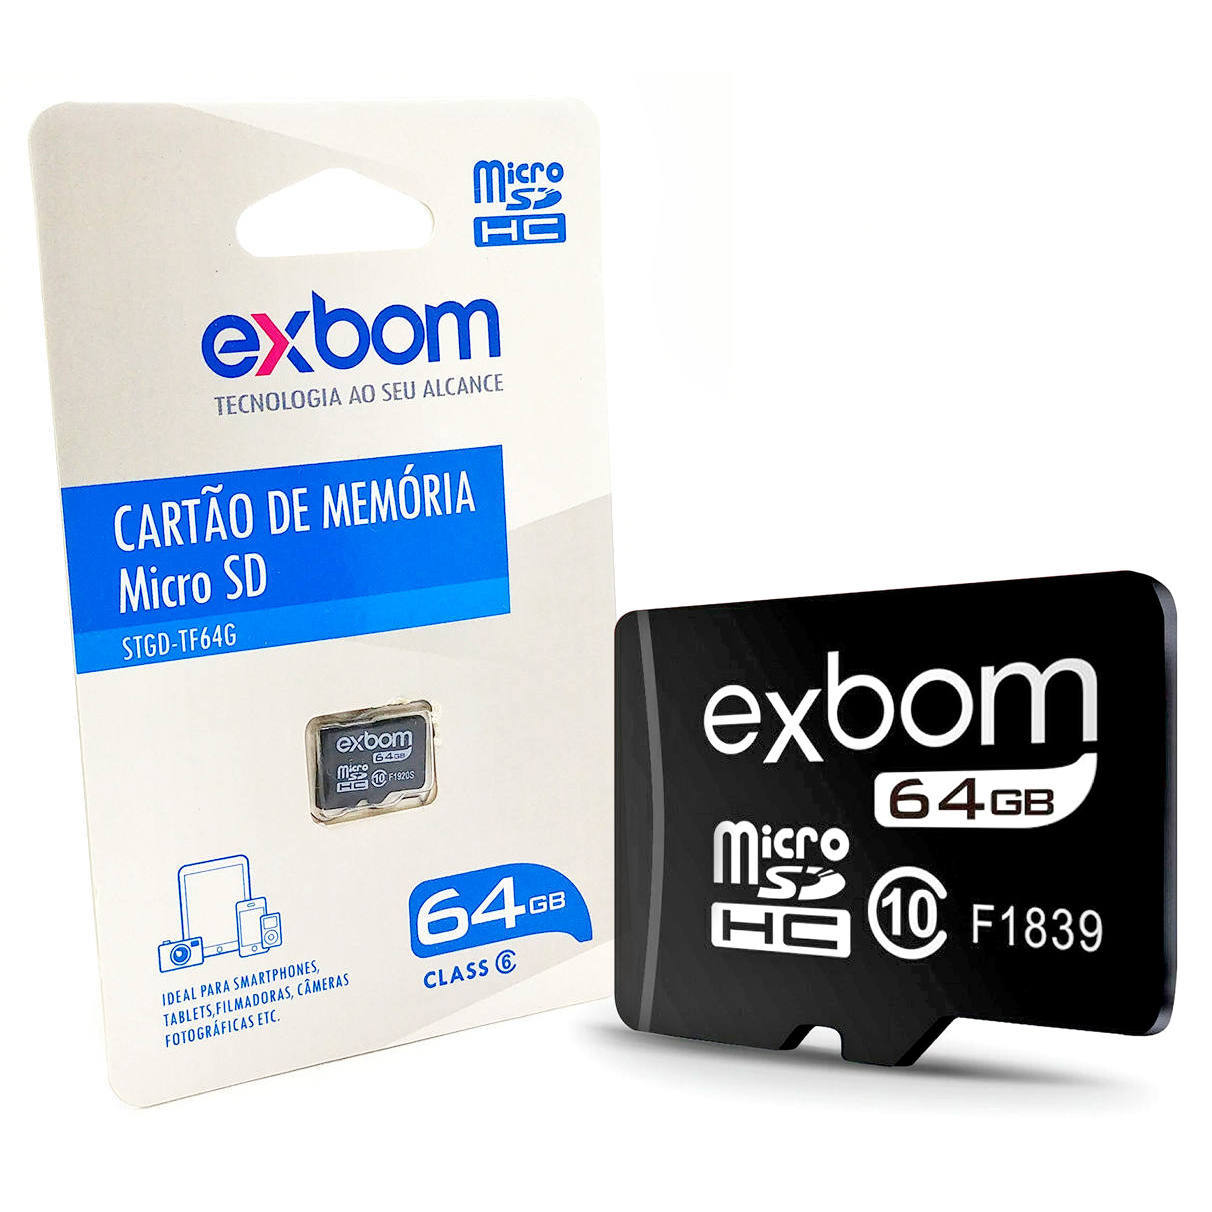 Cartão de Memória 64GB Micro SD Class 6 Memory Card Exbom STGD-TF64G